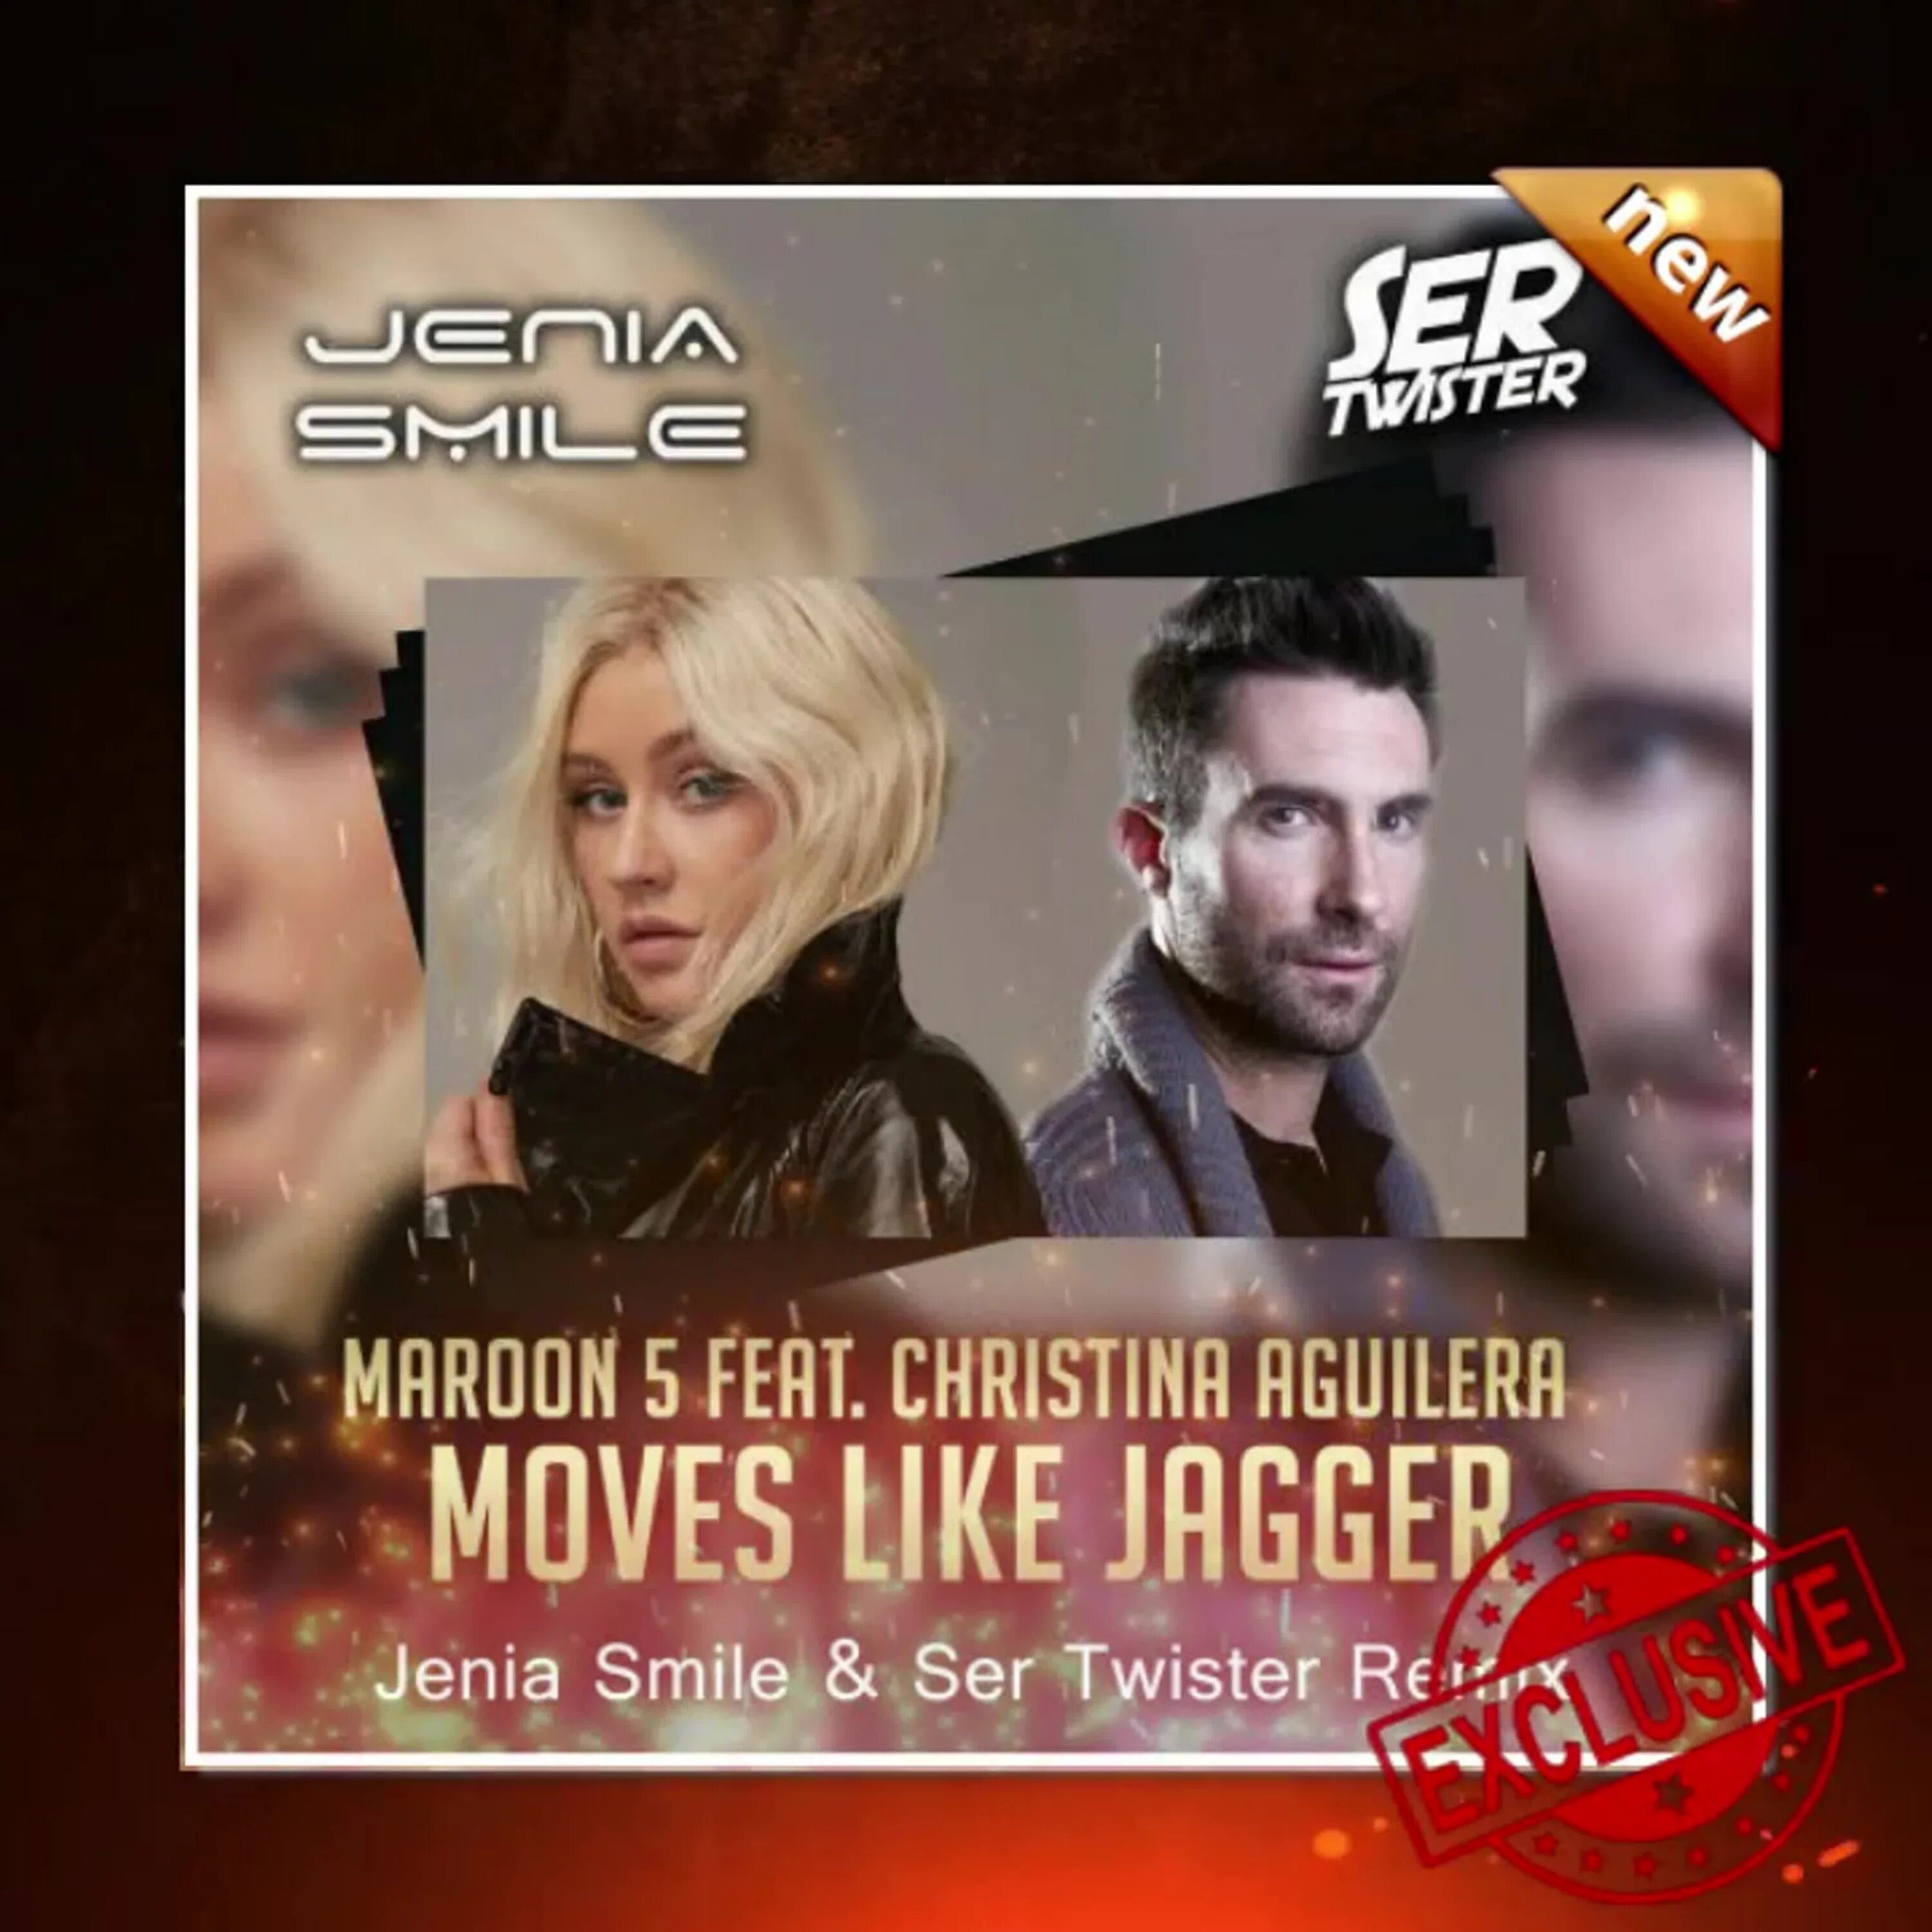 Moves like Jagger. Maroon 5 ft. Christina Aguilera. Christina Aguilera moves like Jagger. Maroon 5 moves like Jagger. Christina aguilera maroon 5 moves like jagger